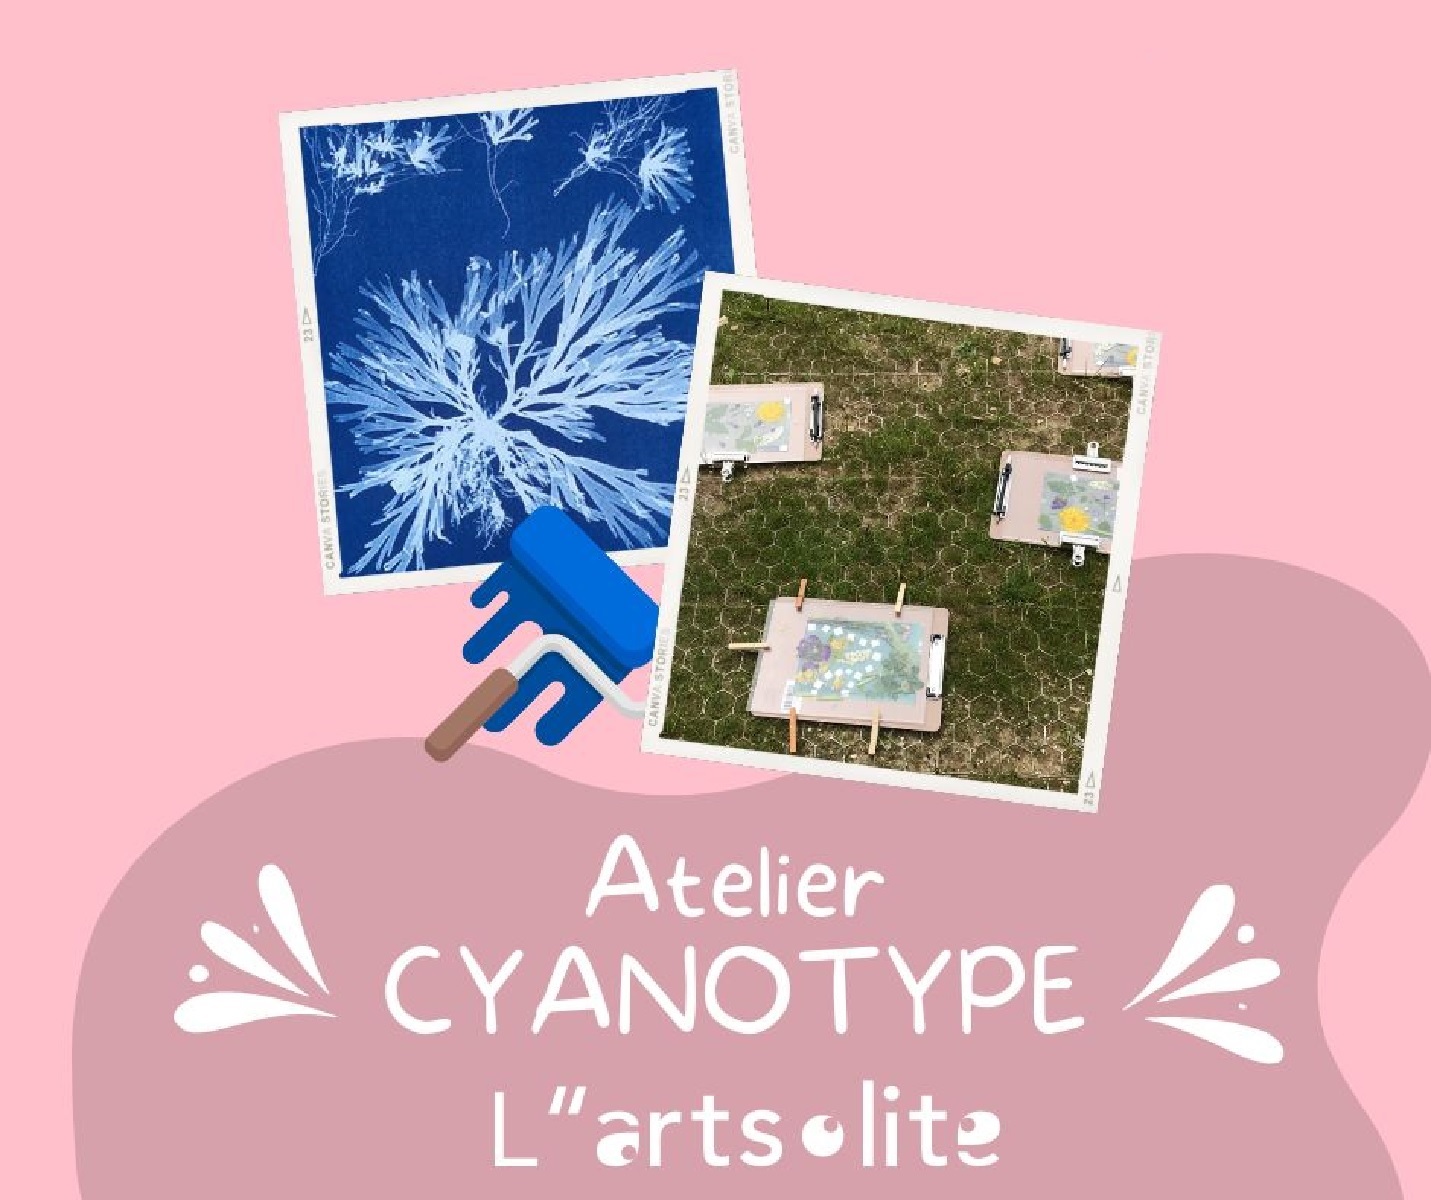 Atelier Cyanotype à L''artsolite - Exposition L'art de la sieste